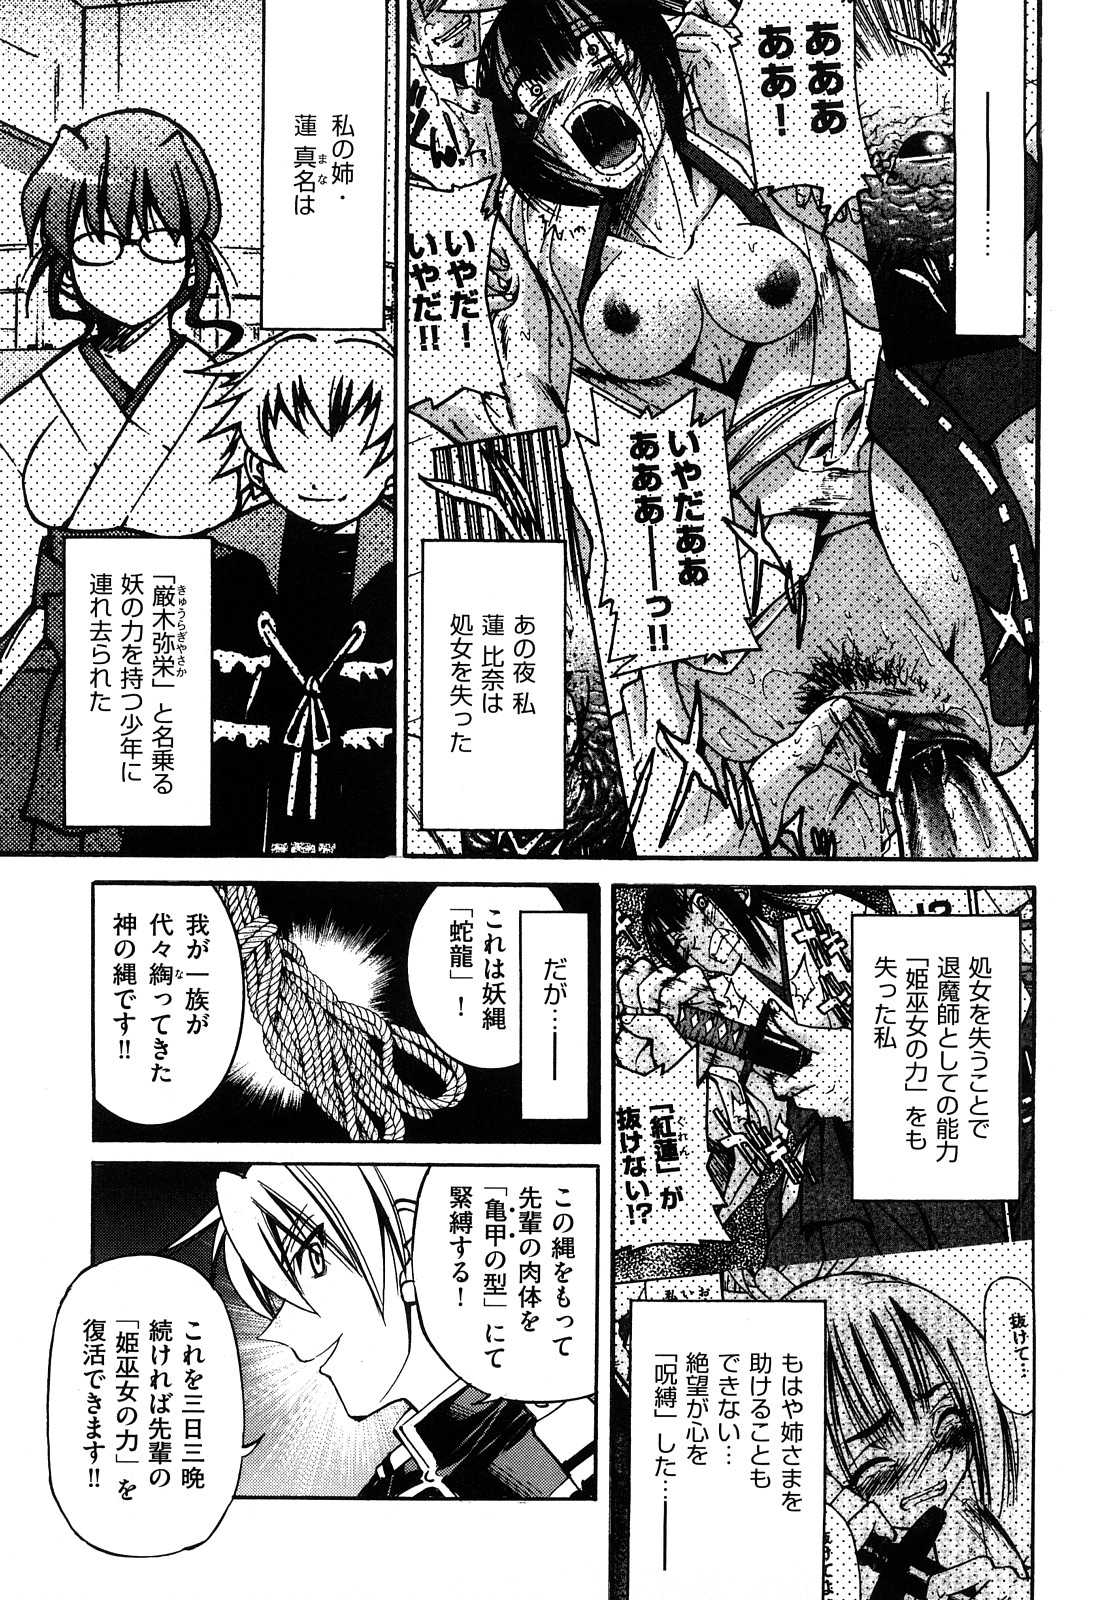 [Inoue Yoshihisa] Nawashi (成年コミック) [井上よしひさ] 縄士 [2009-10-28-207]